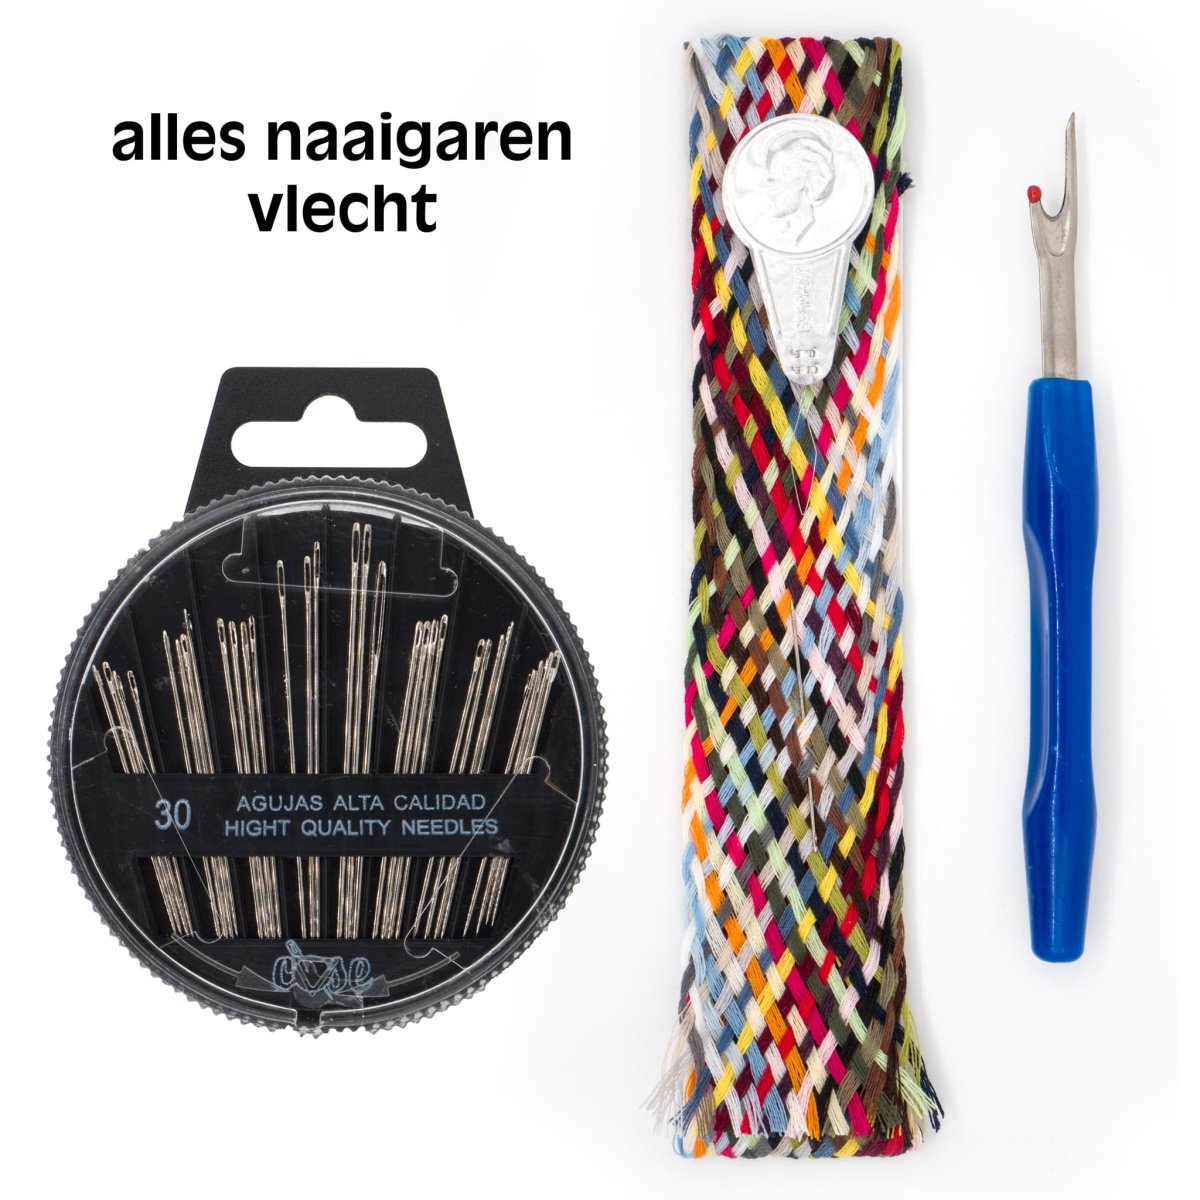 Gütermann Naaigaren vlecht met alles naaigaren - set naaigaren vlecht NGV-STD-Set - Fourniturenkraam.nl